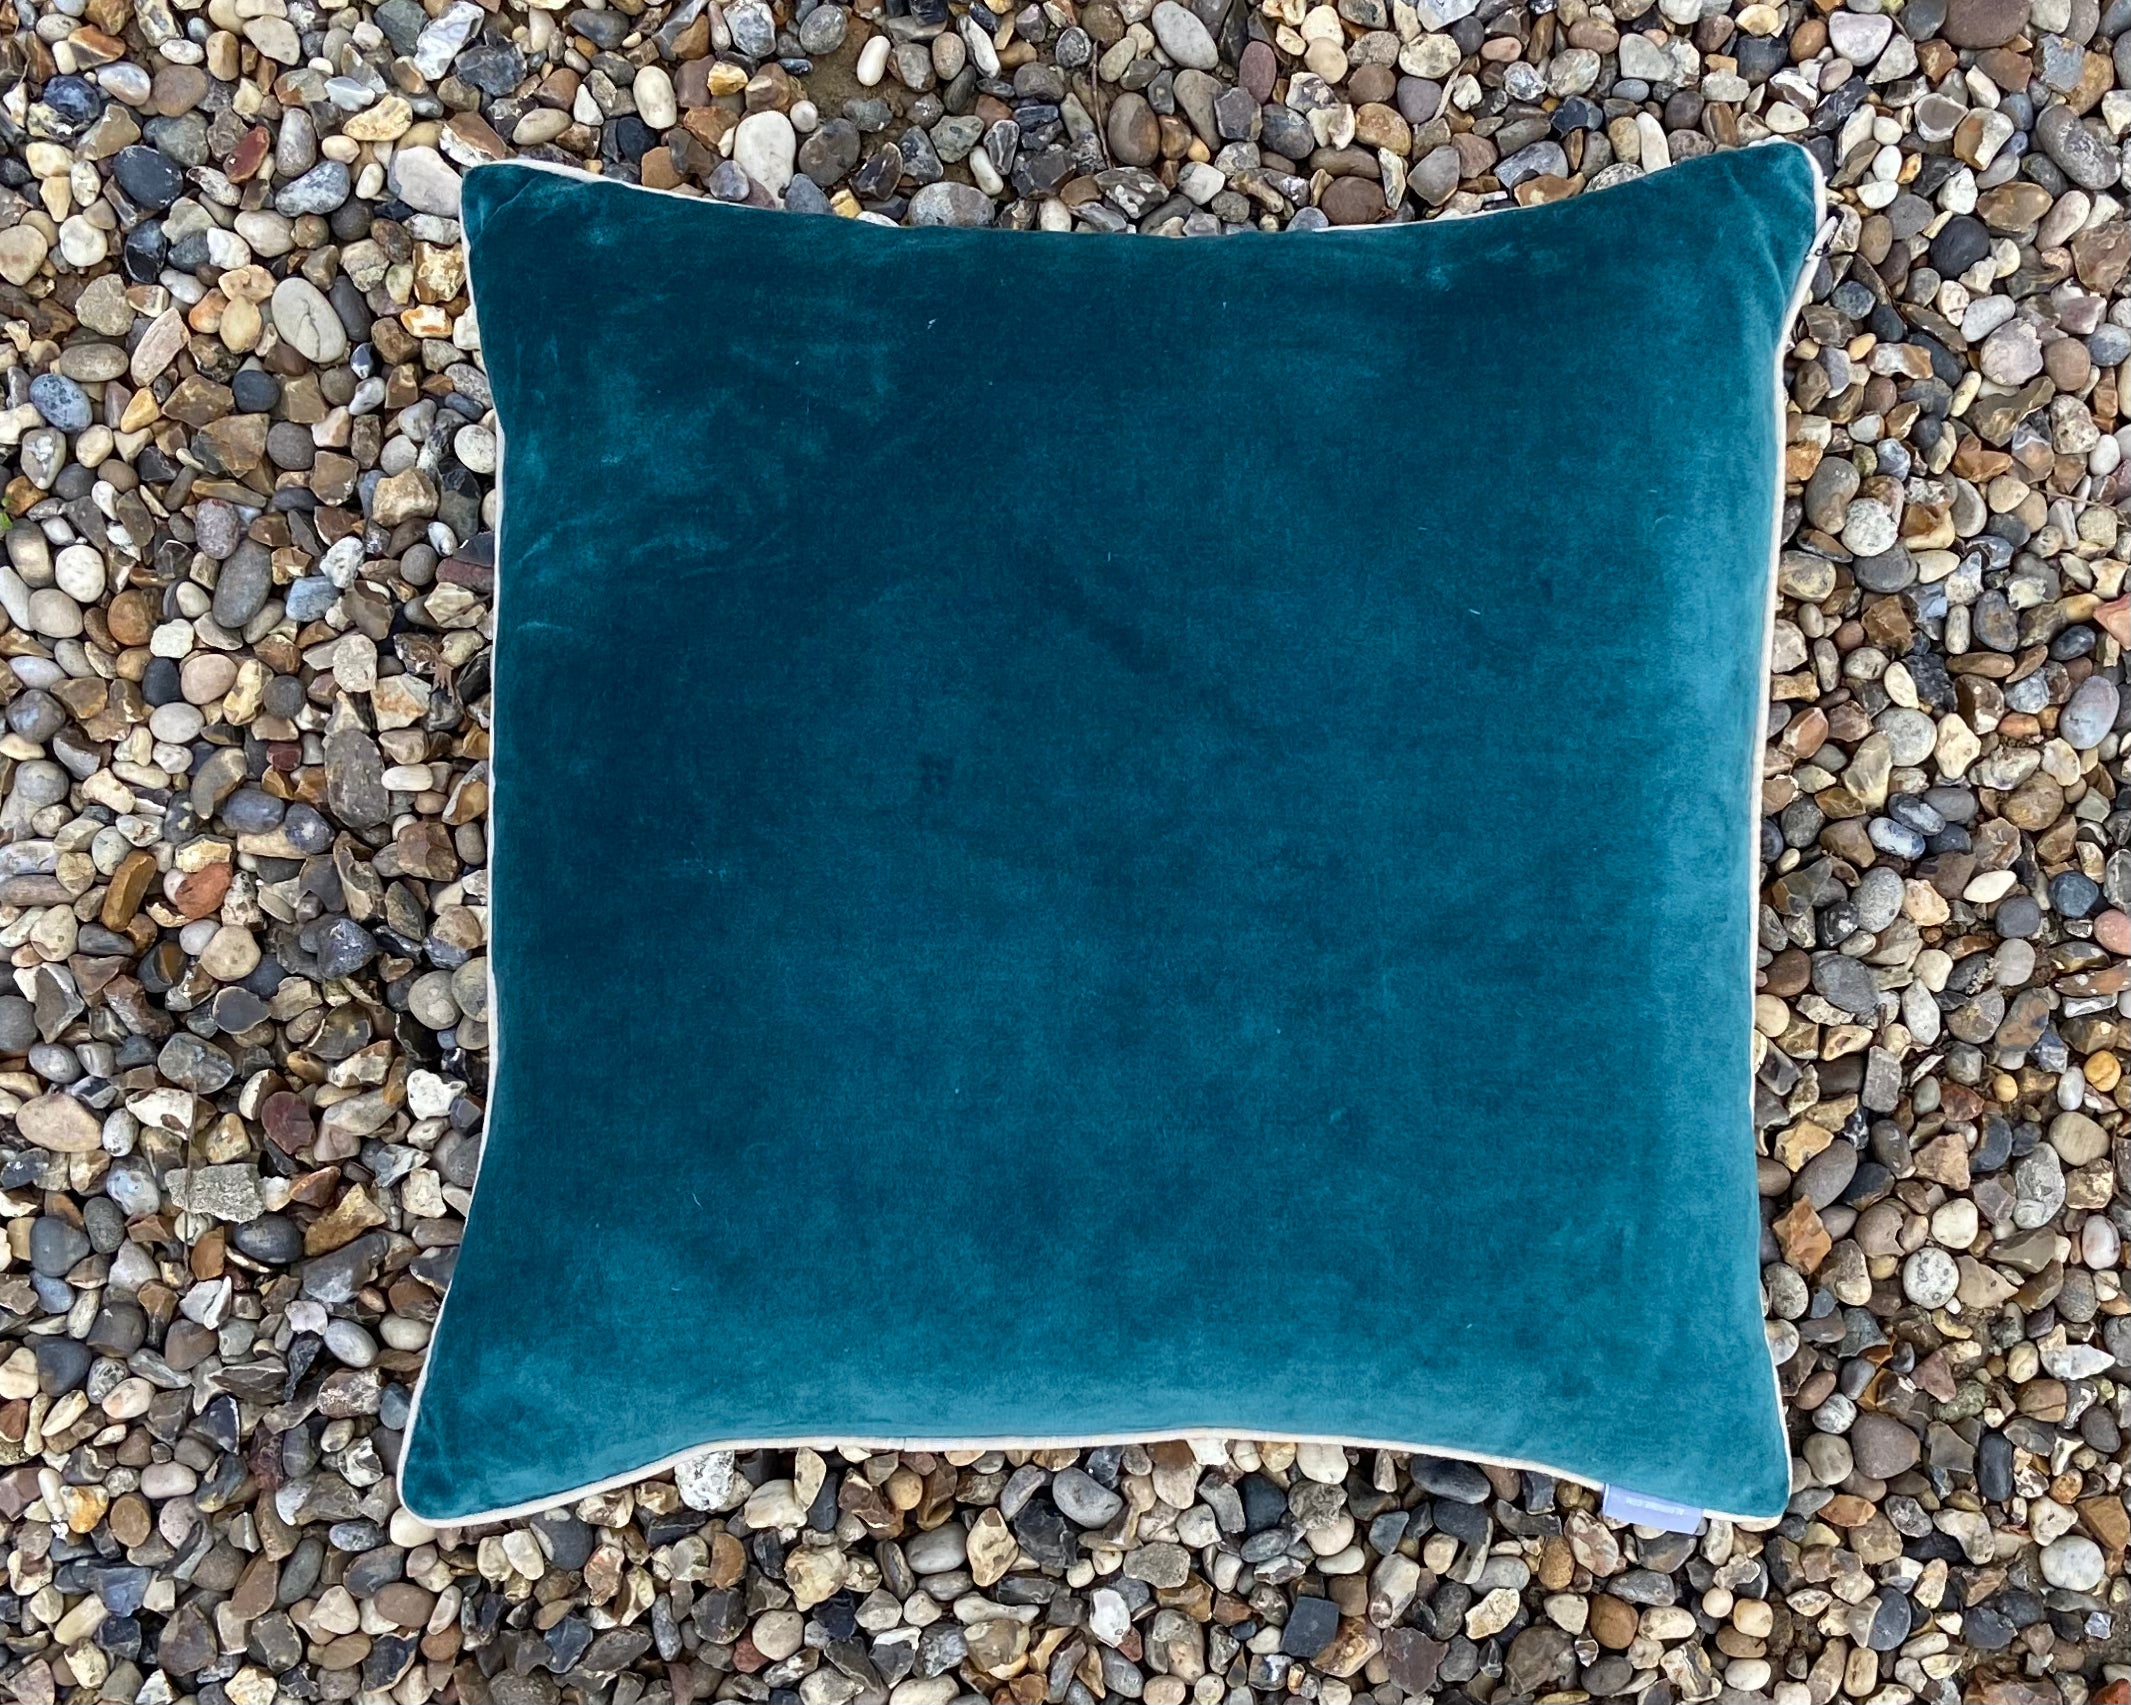 Teal Velvet Cushion